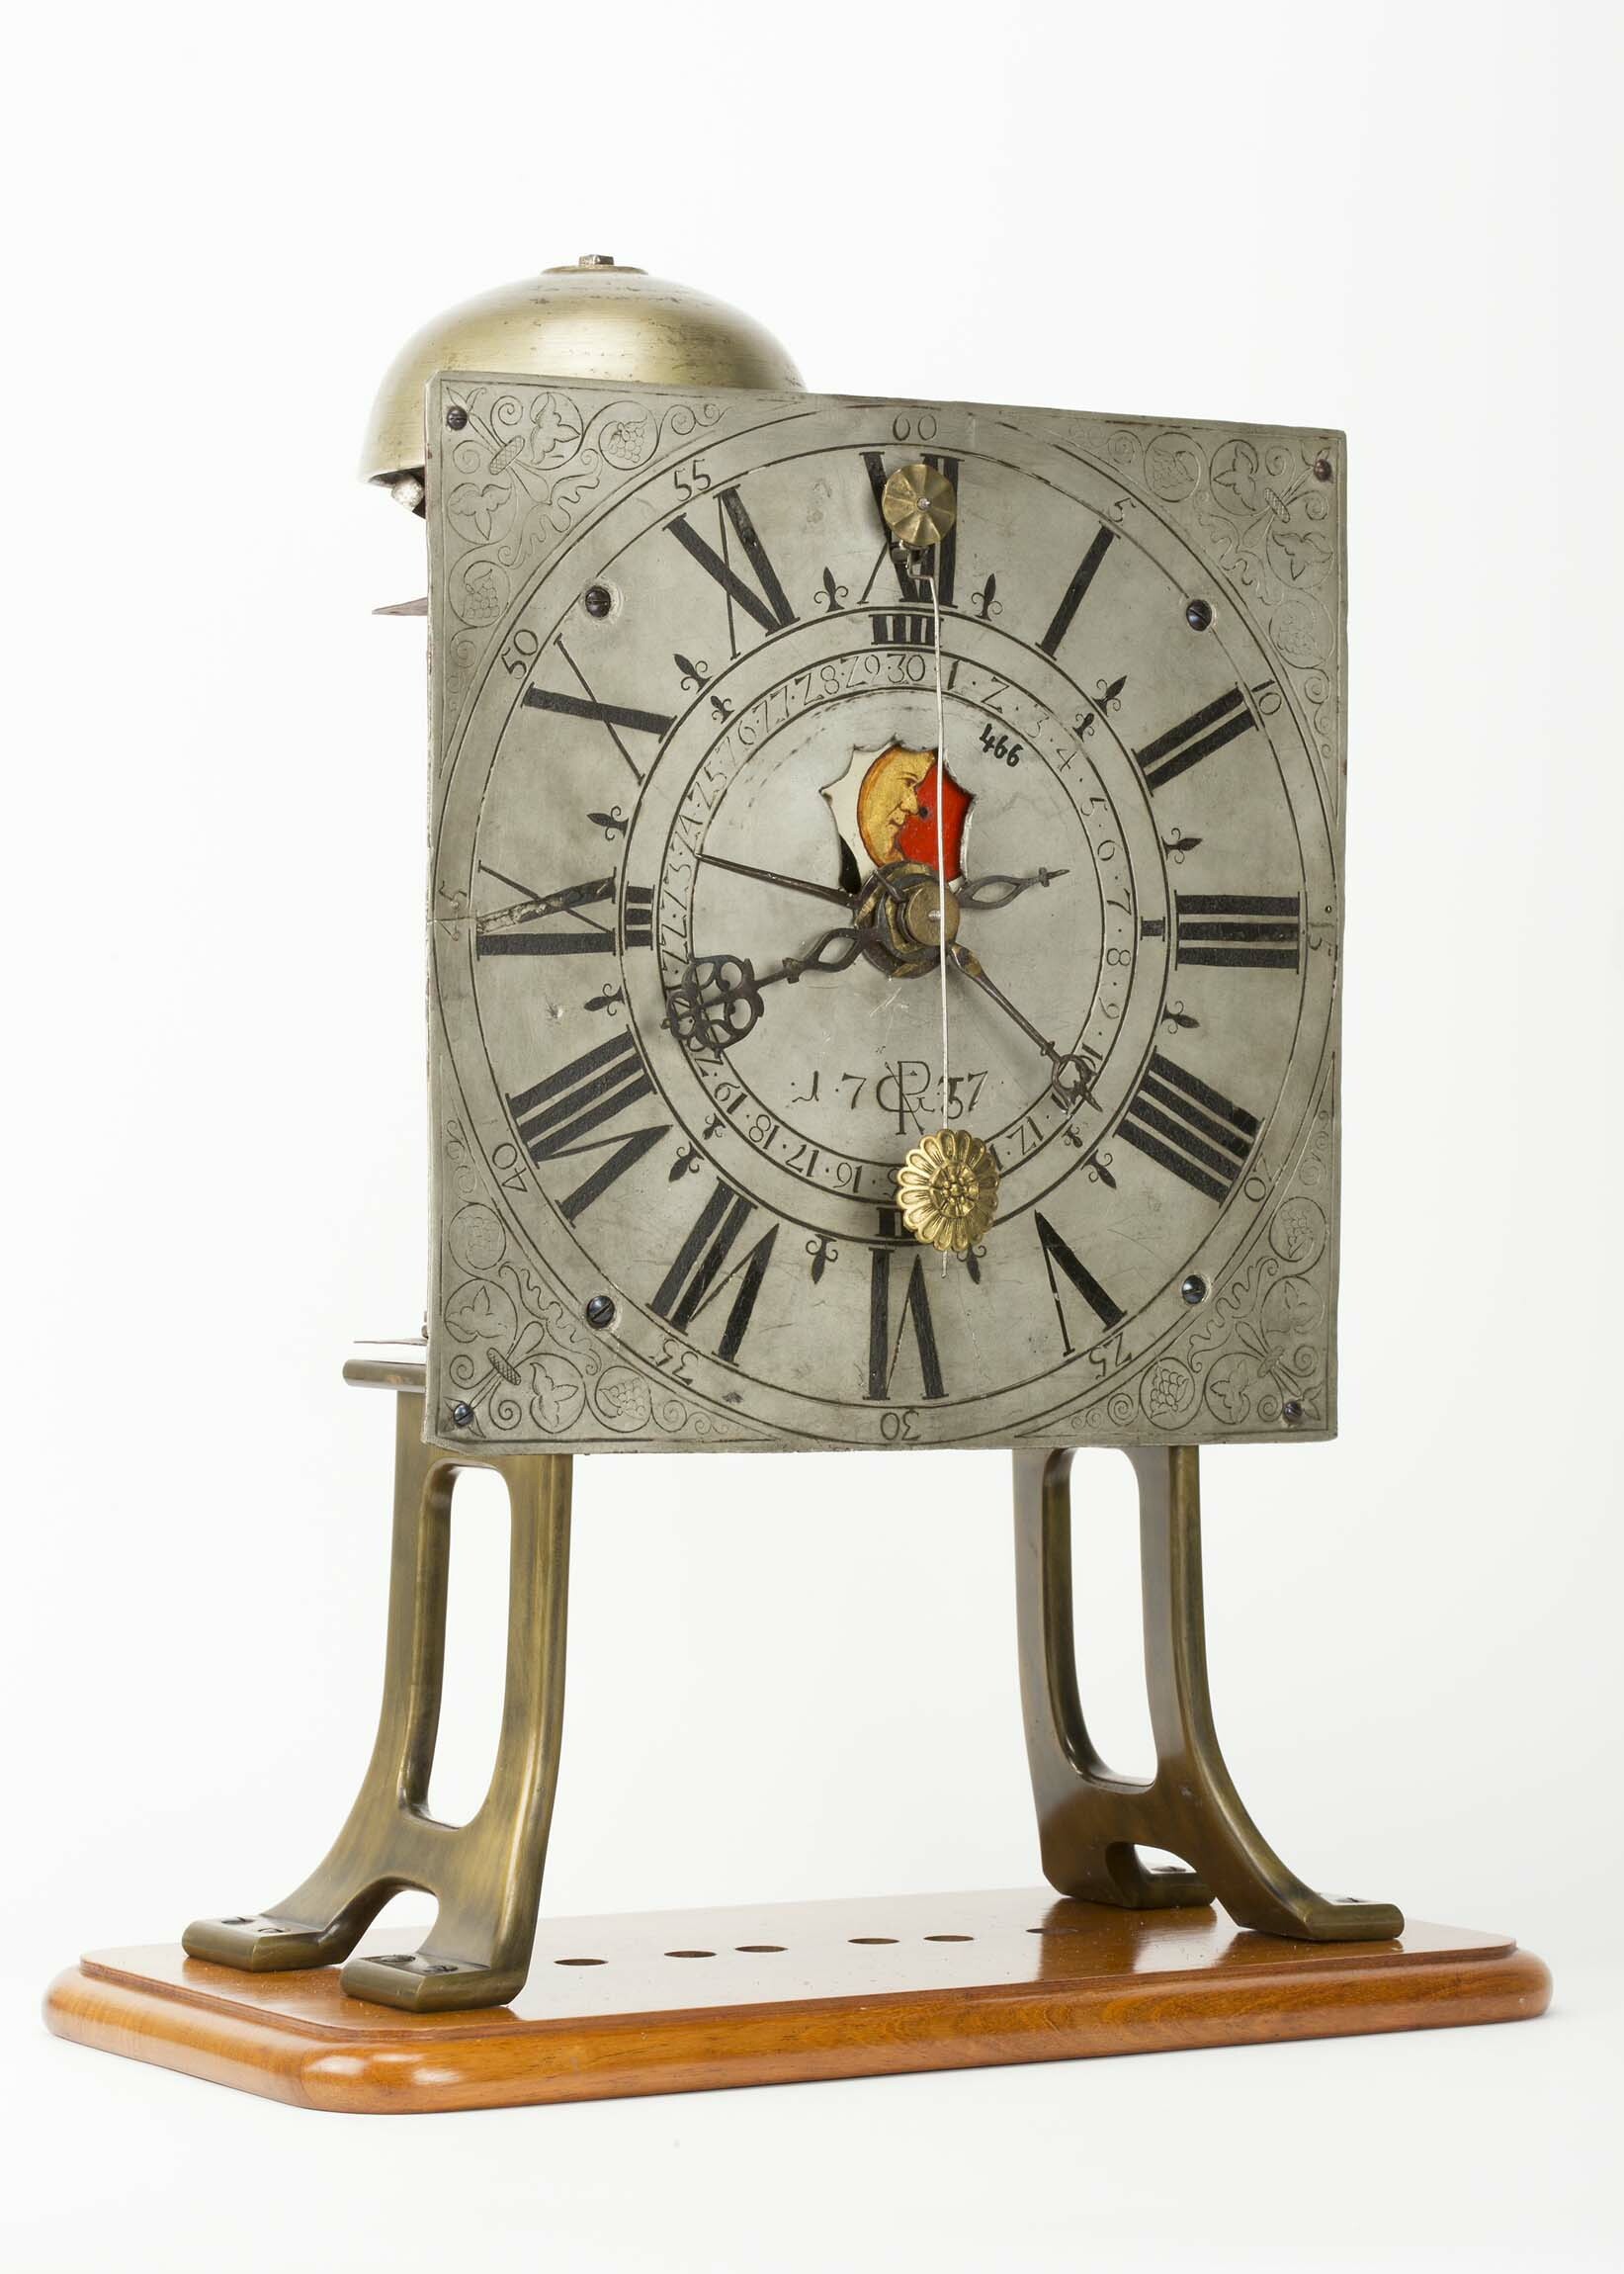 Pendeluhrwerk, GP, 1737 / 1757 (?) (Deutsches Uhrenmuseum CC BY-SA)